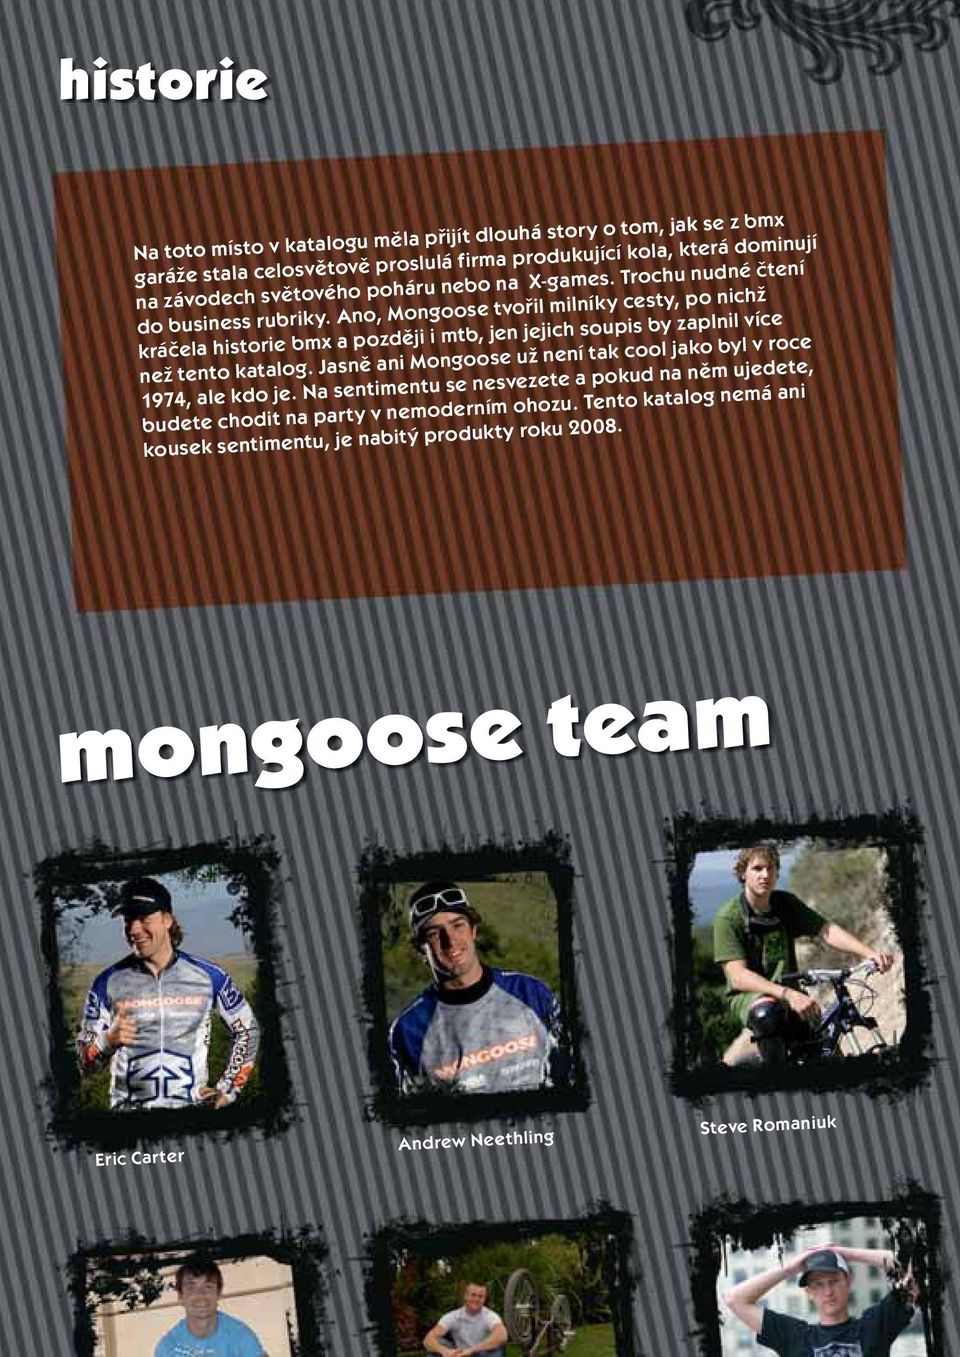 Ano, Mongoose tvořil milníky cesty, po nichž kráčela historie bmx a později i mtb, jen jejich soupis by zaplnil více než tento katalog.